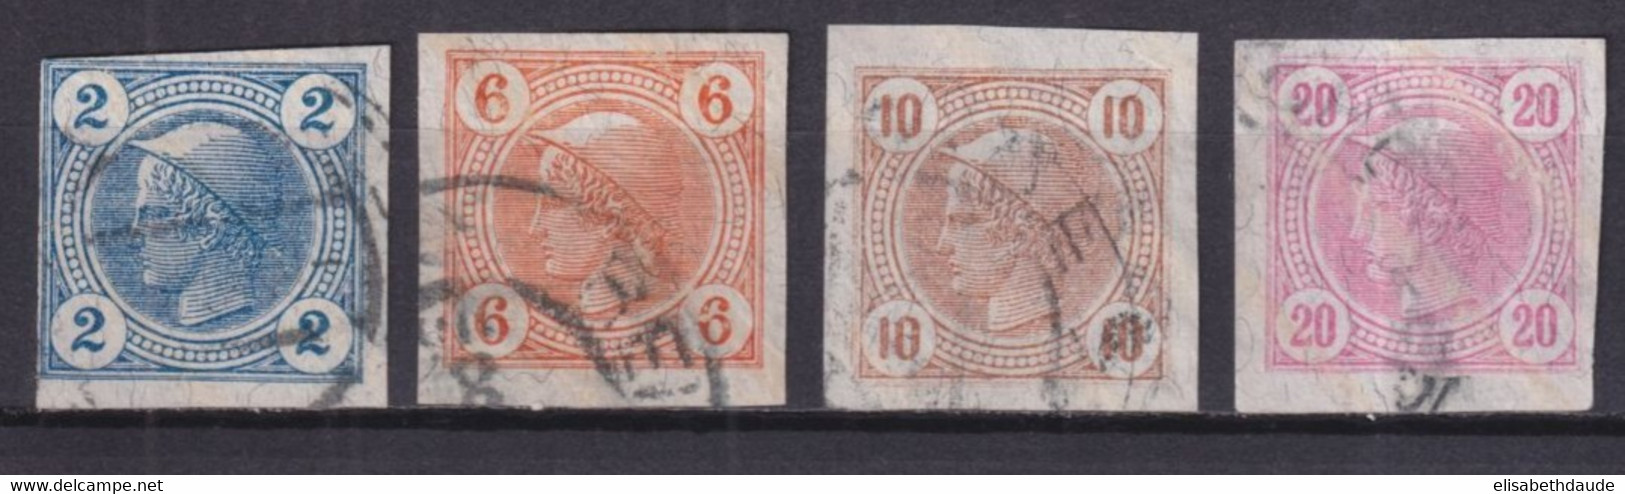 AUTRICHE - 1899 - JOURNAUX YVERT N°12a/15a LIGNES OBLIQUES ! OBLITERES - COTE = 100 EUR - Oblitérés